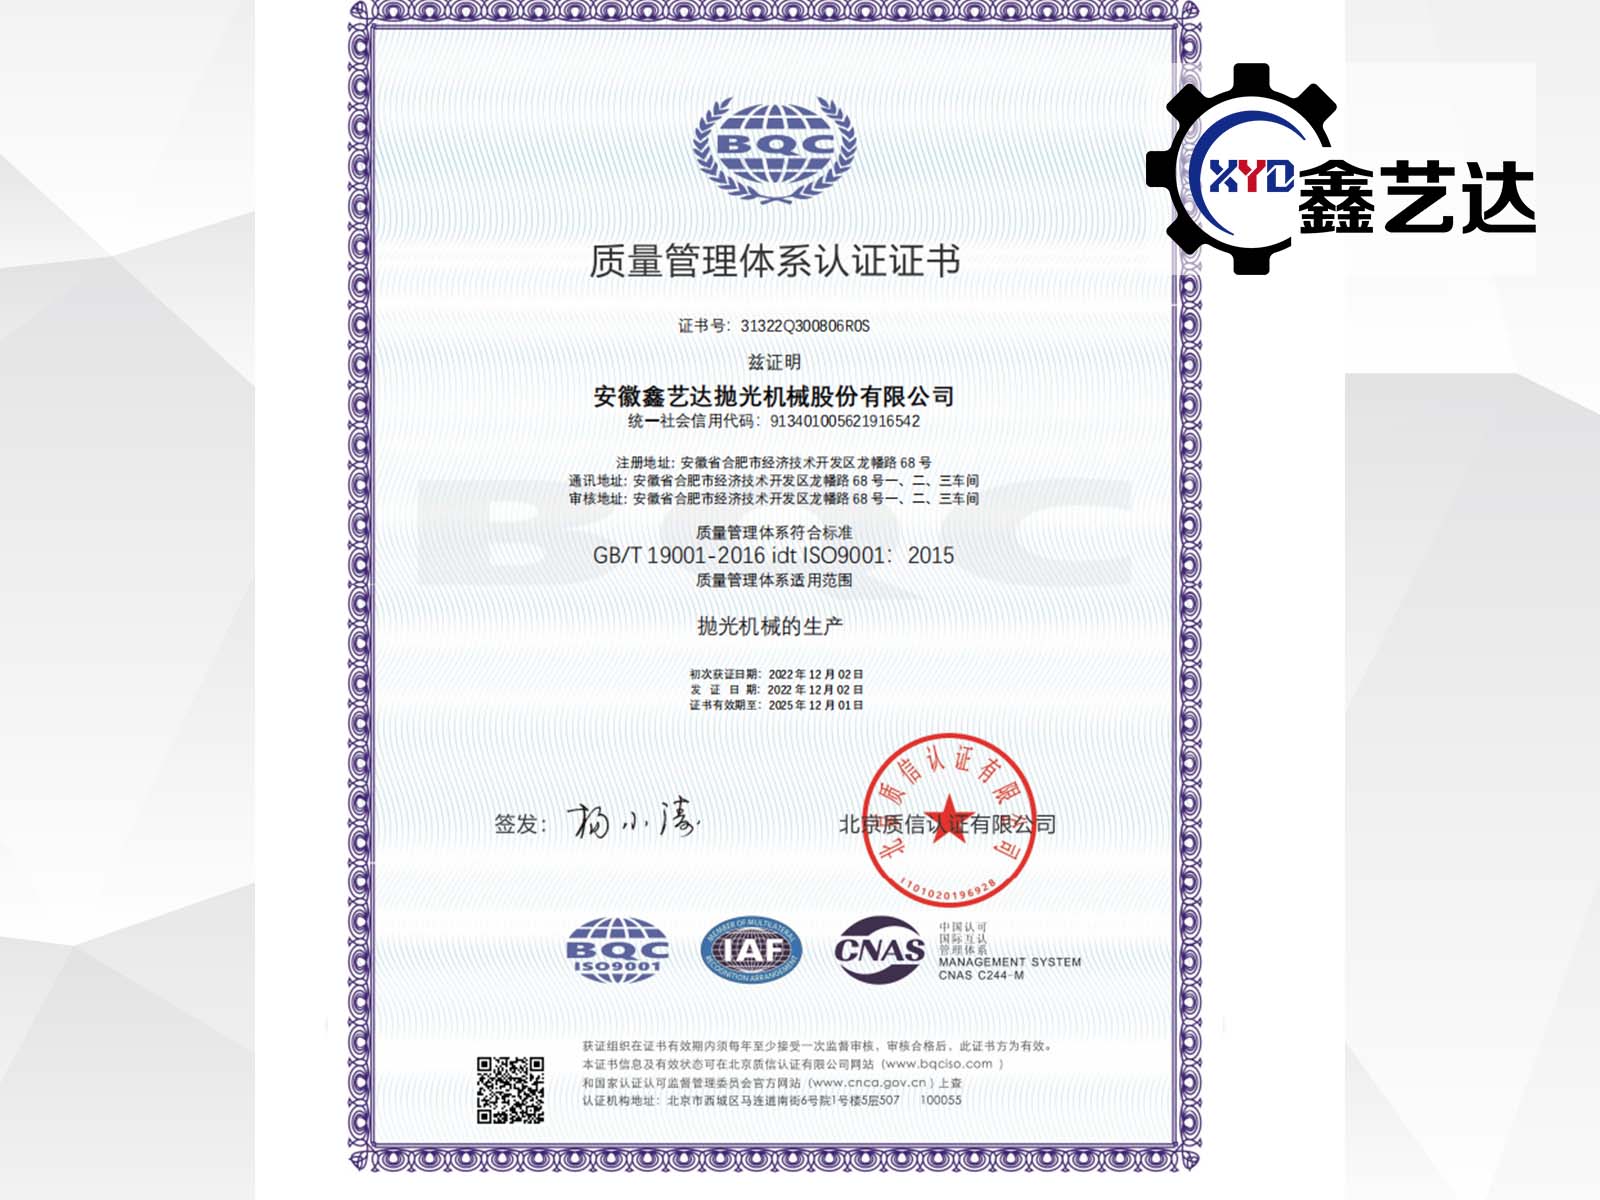 祝贺我司顺利通过ISO9001